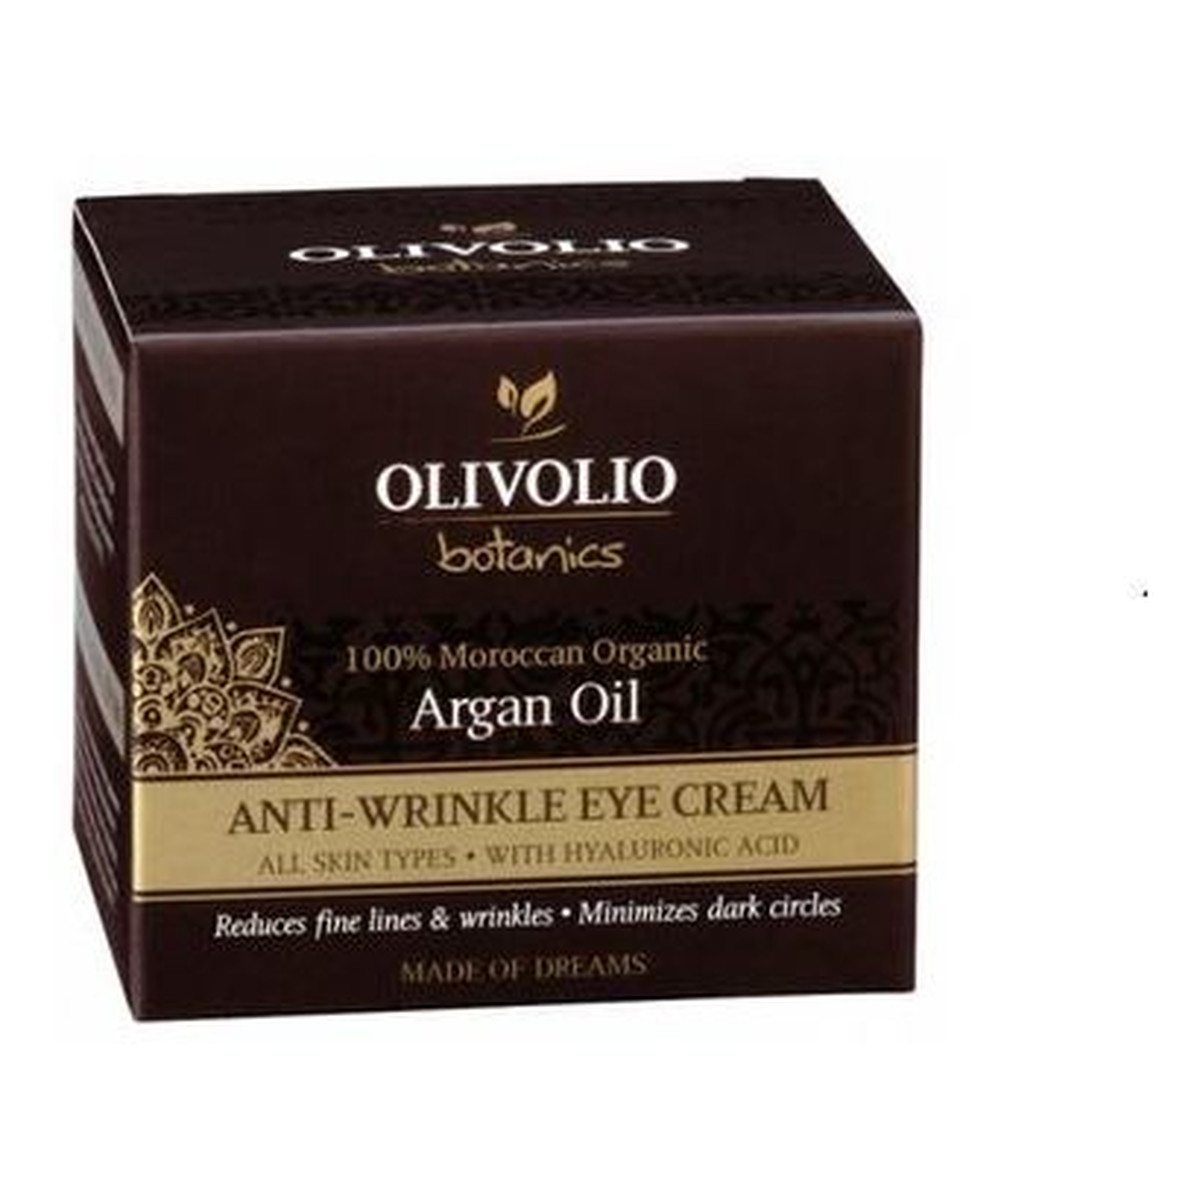 Olivolio Argan Oil Anti-Wrinkle Eye Cream Przeciwzmarszczkowy krem pod oczy z organicznym olejem arganowym 30ml